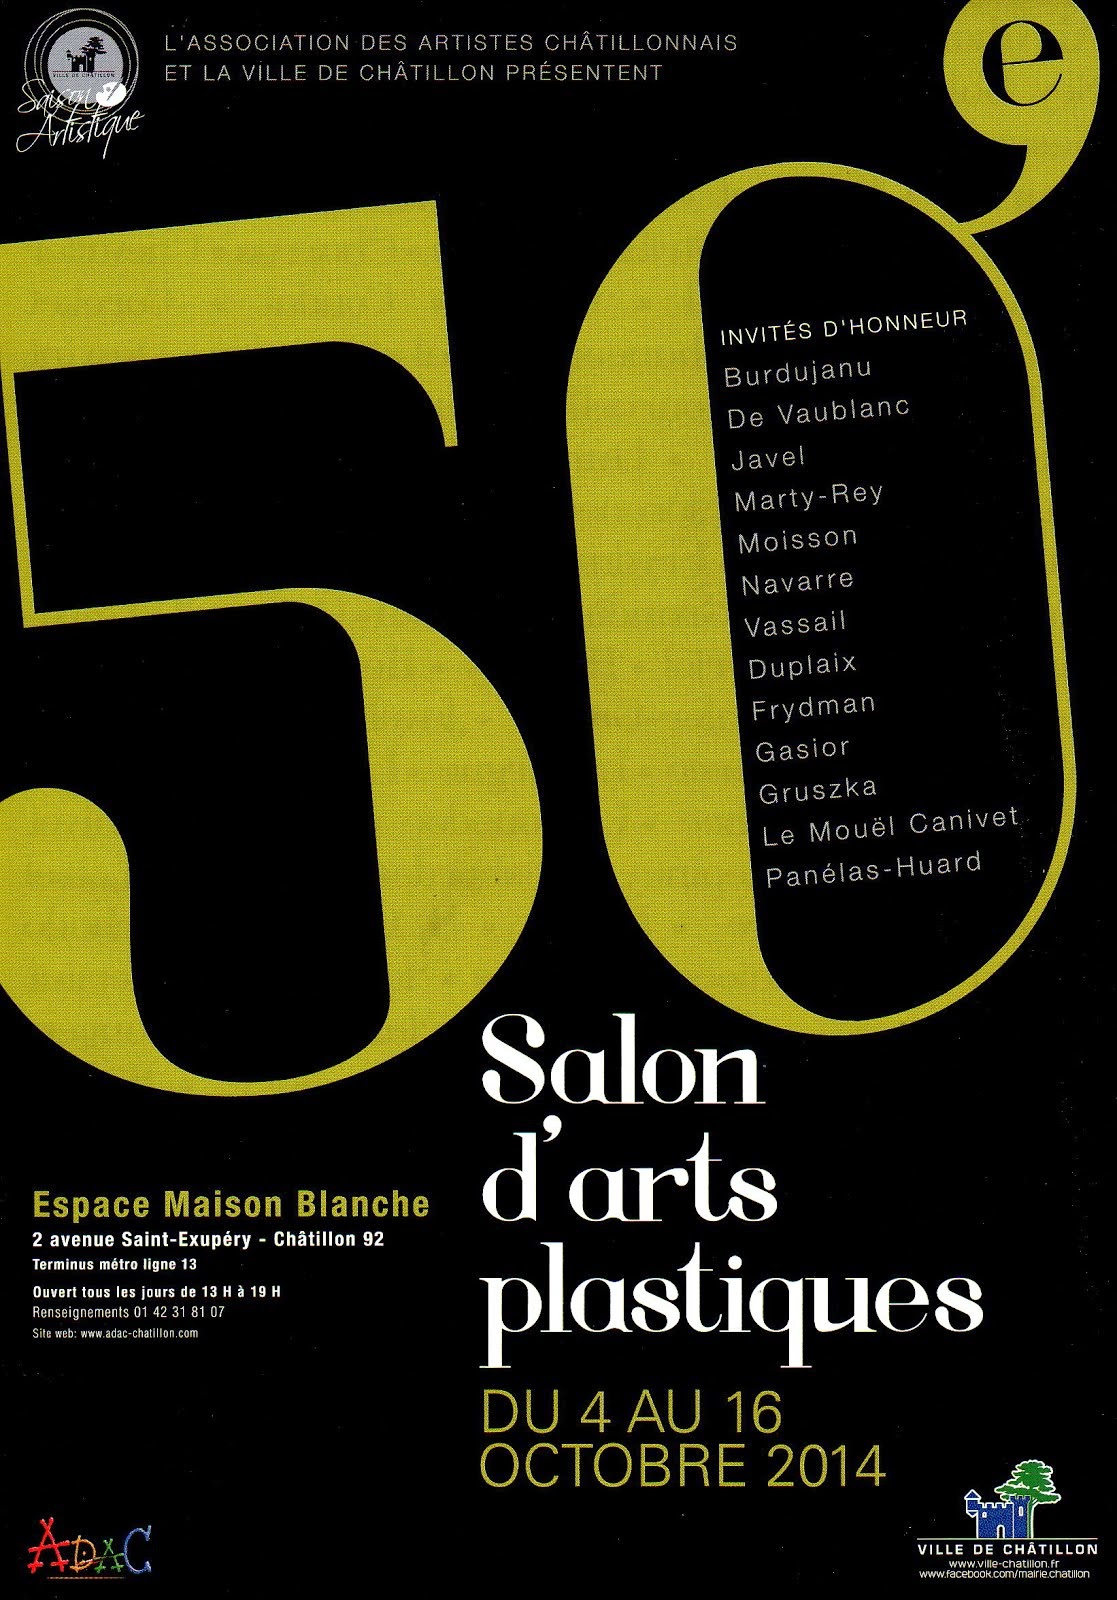 Salon d'Arts plastiques de Châtillon du 4 au 16 octobre 2014